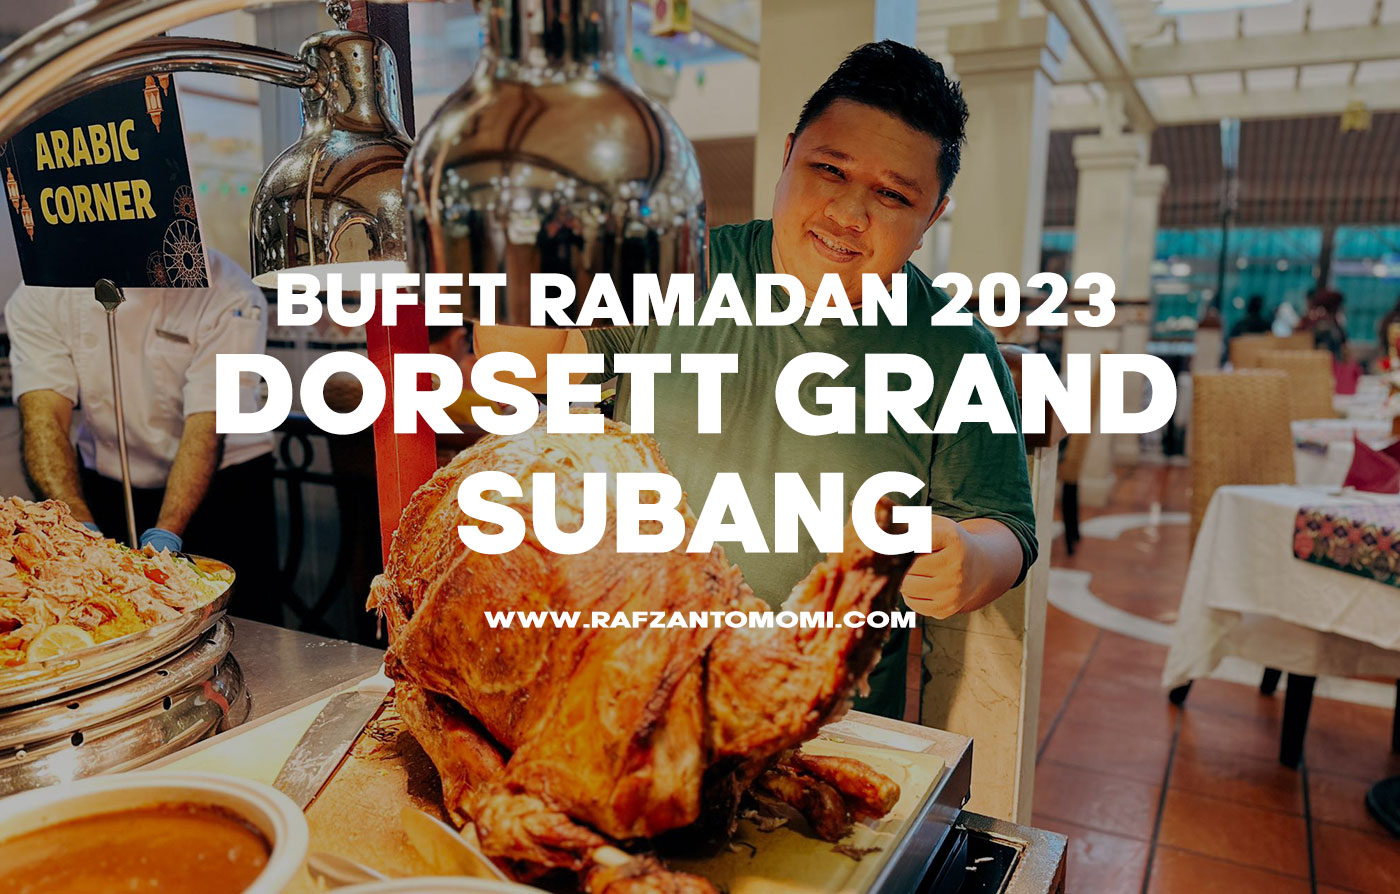 Bufet Ramadan 2023 - Dorsett Grand Subang